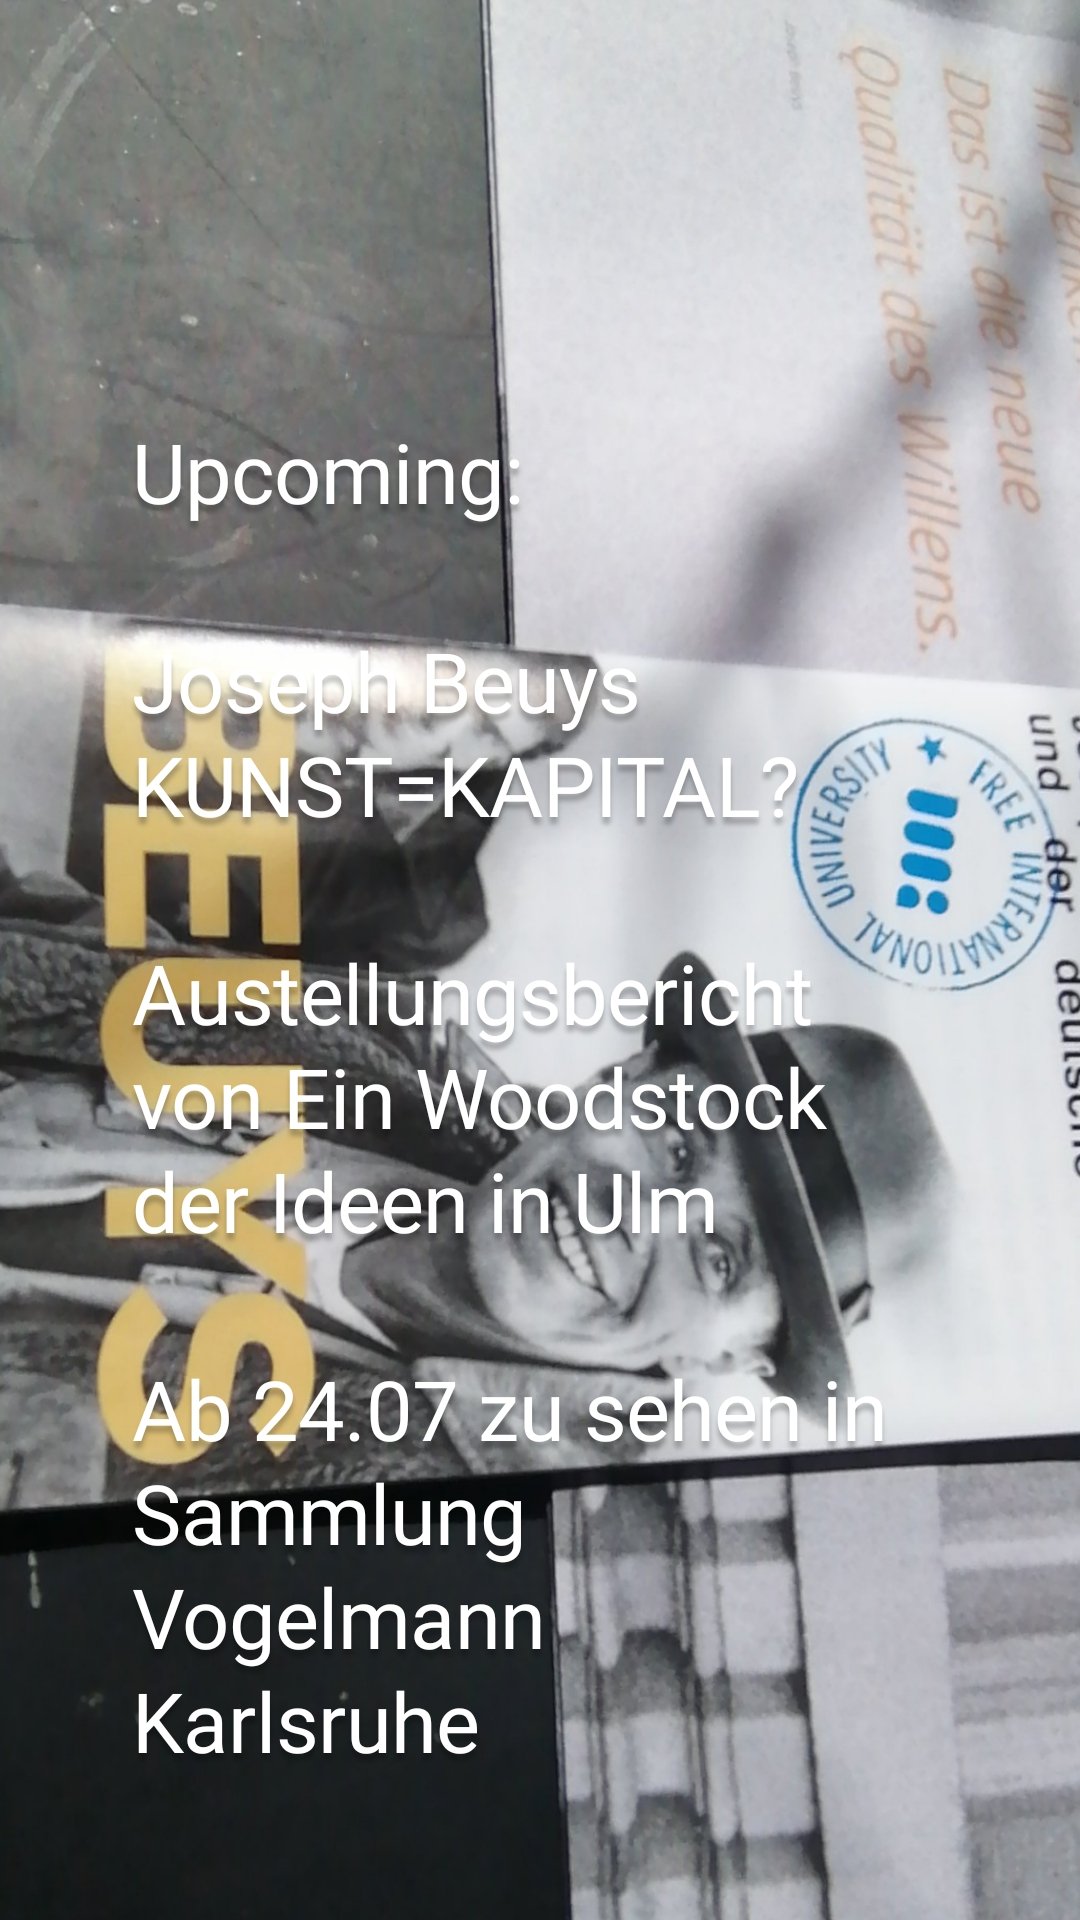 Upcoming:

Joseph Beuys
KUNST=KAPITAL?
 
Austellungsbericht von Ein Woodstock der Ideen in Ulm

Ab 24.07 zu sehen in Sammlung Vogelmann
Karlsruhe

